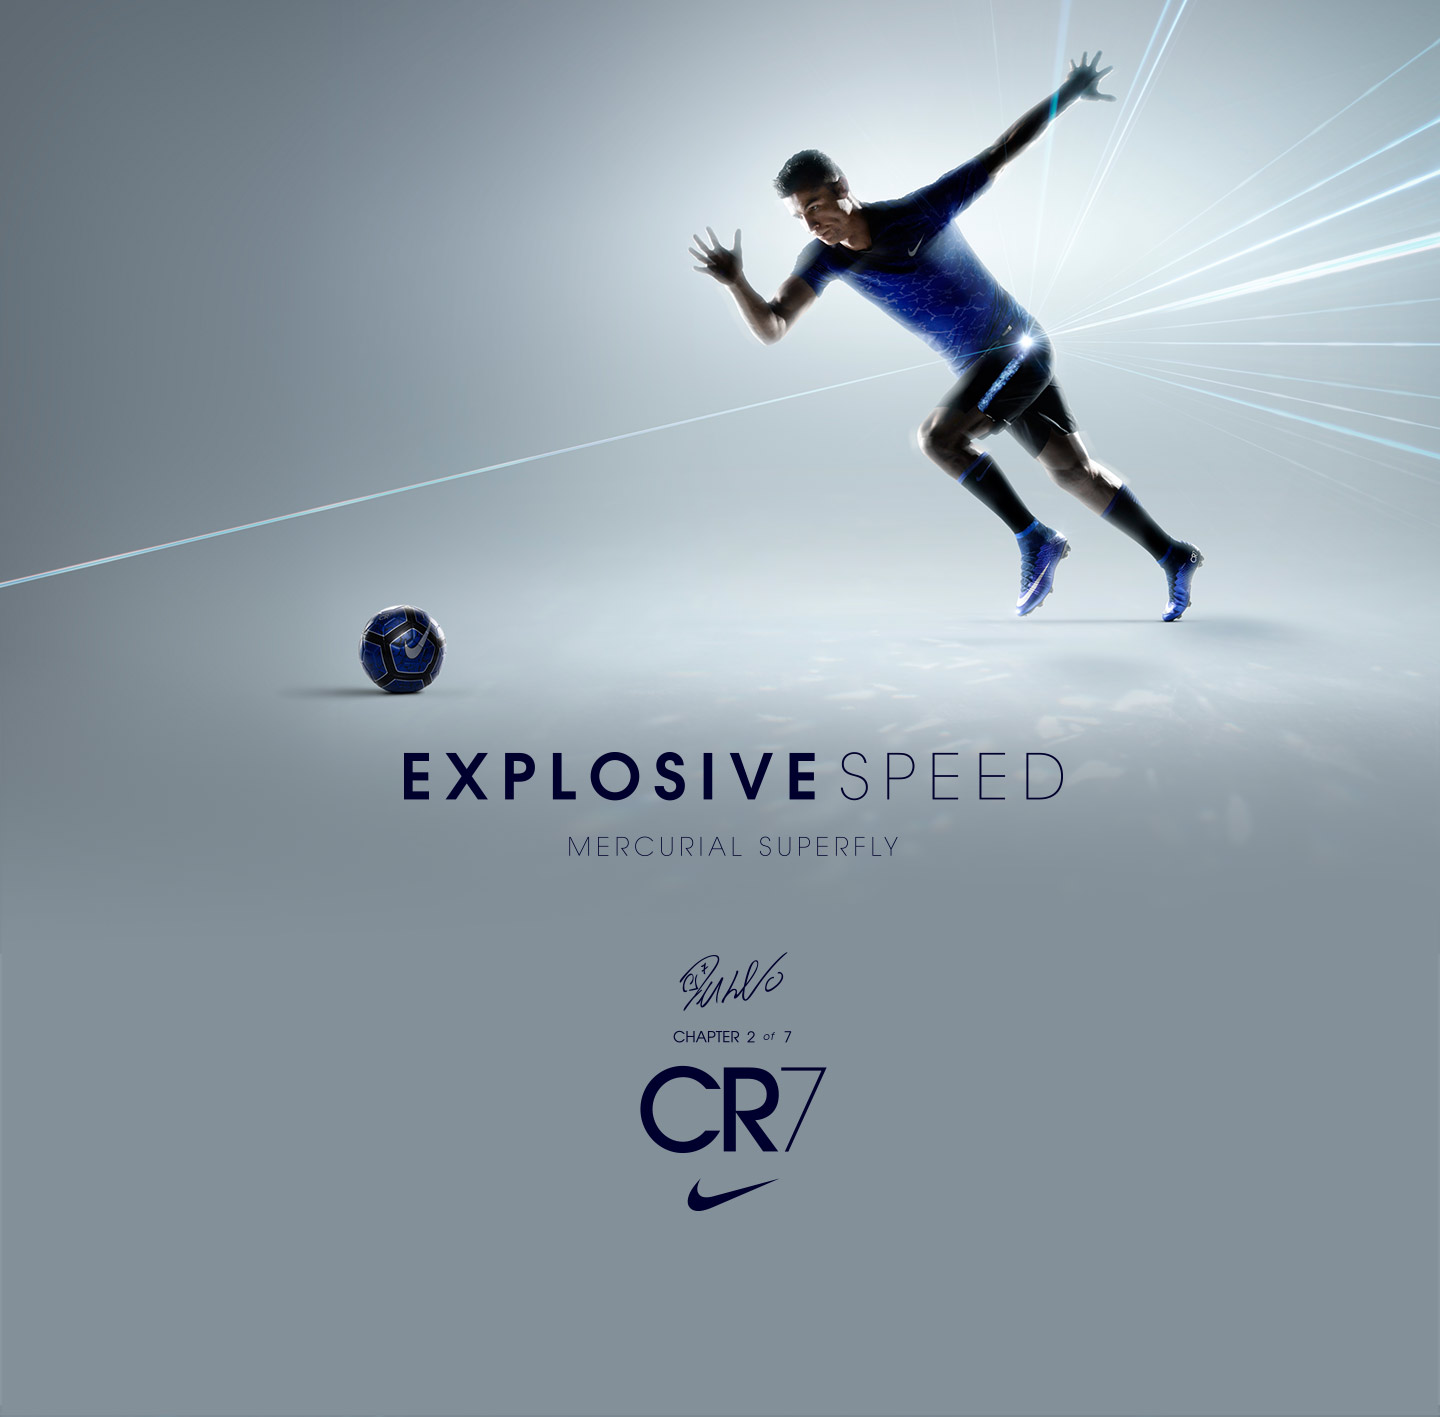 entrevista Extinto calcio Nike Explosive Speed CR7 - 11teamsports.sk